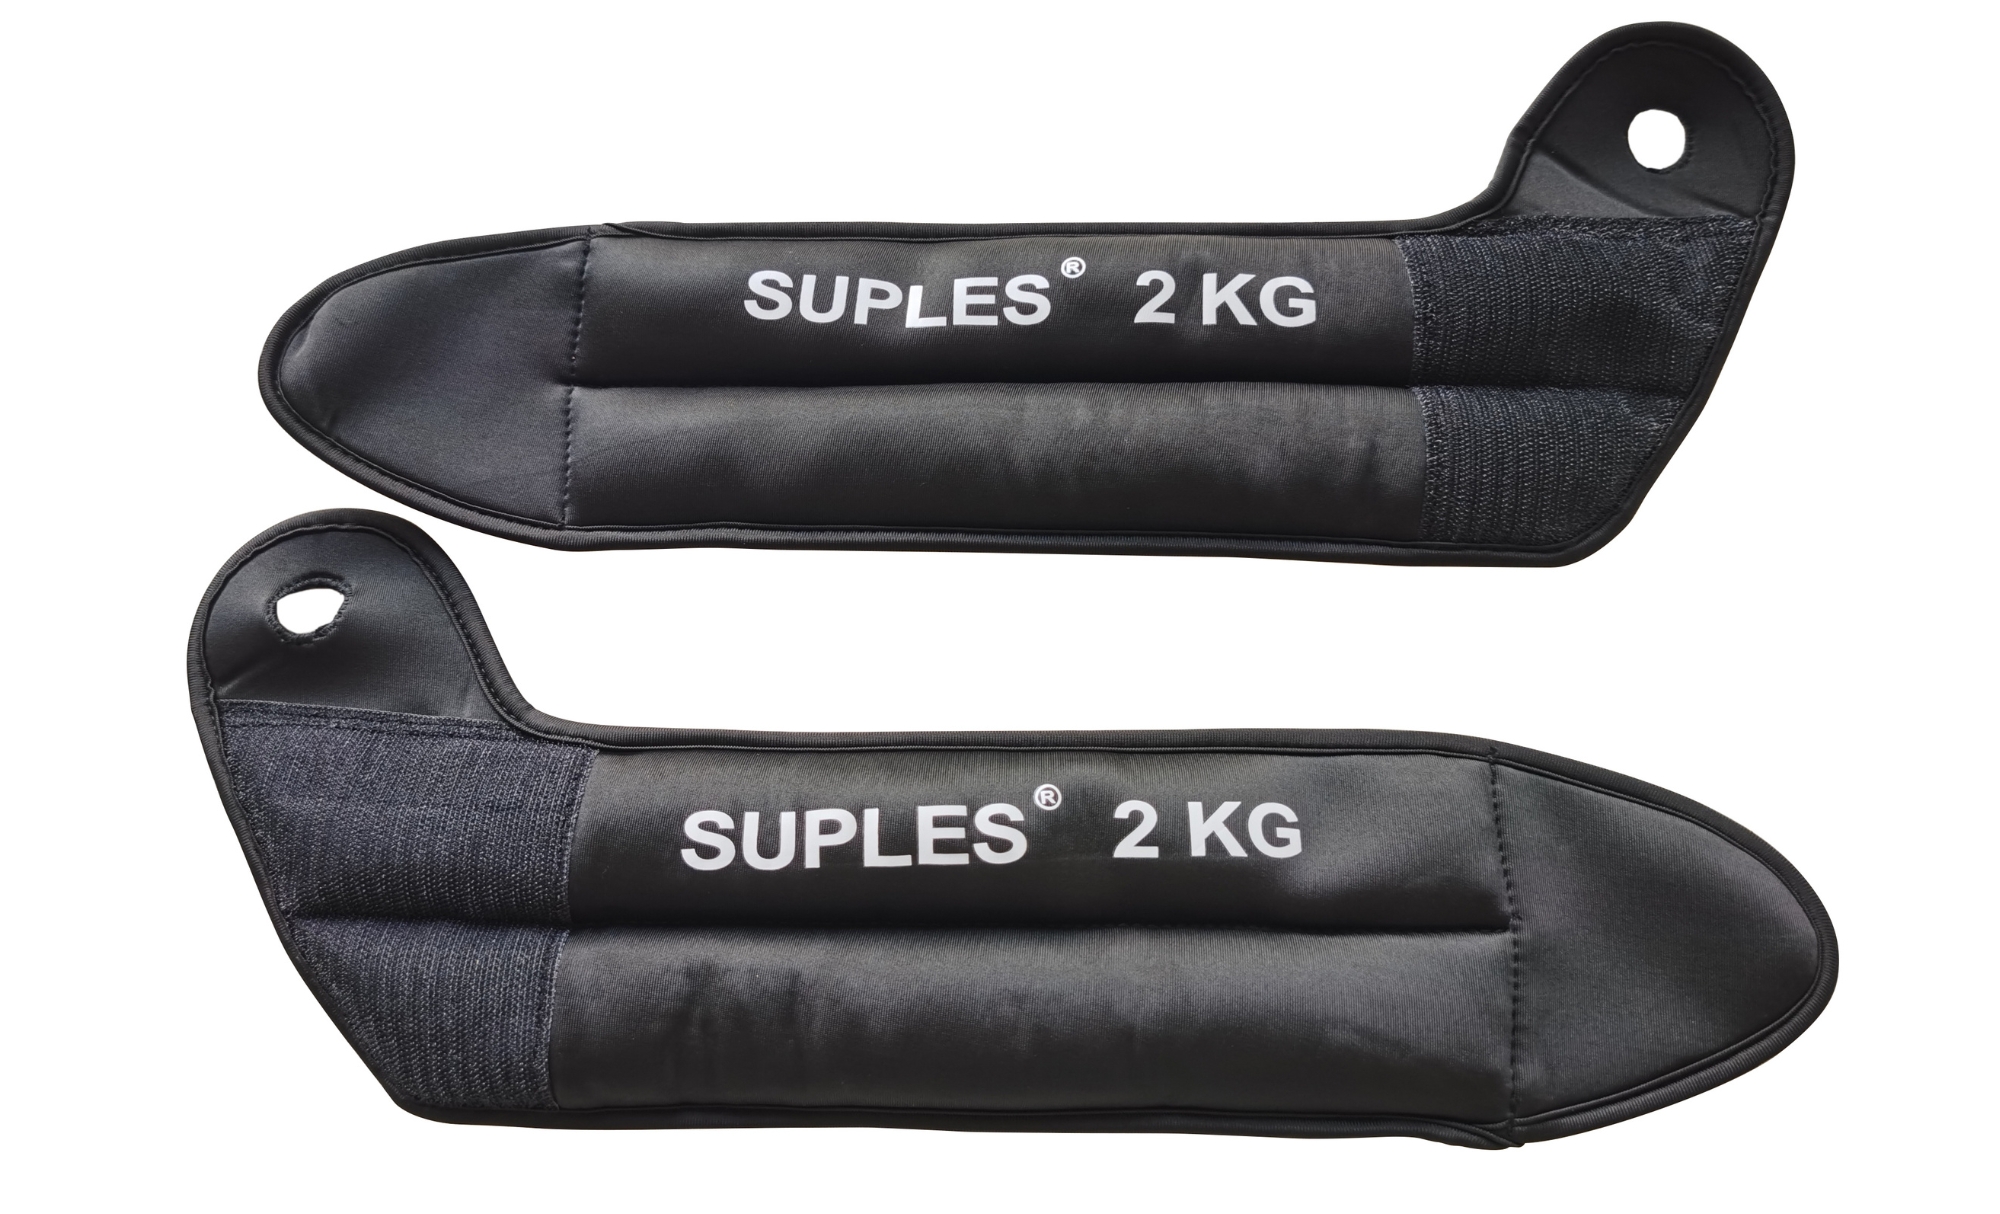 Suples Cuffs (pair) - 2 x 4.5lbs/2kg